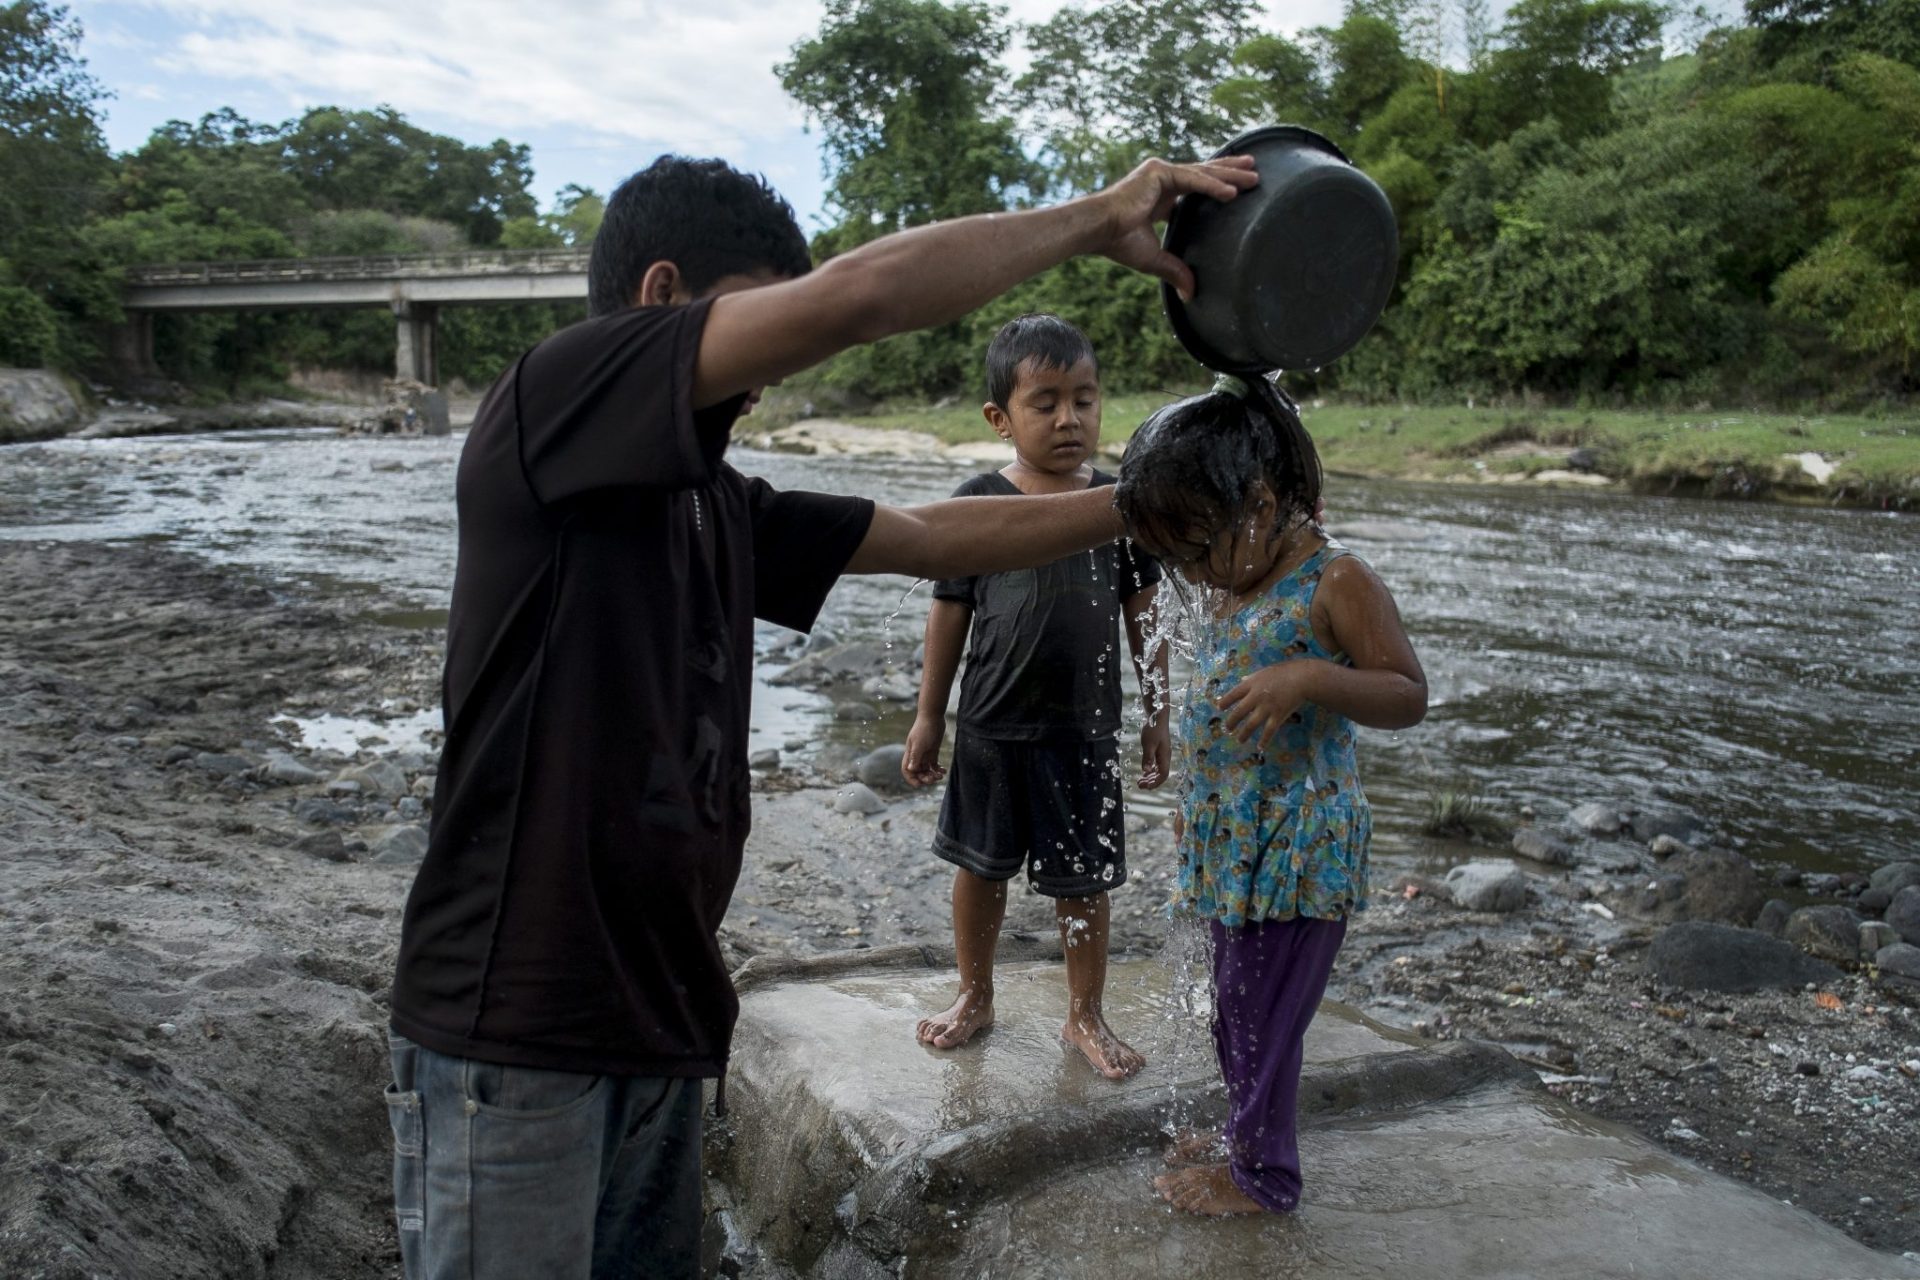 Niños bañándose en el río San Antonio (Nejapa, San Salvador). Foto de Pedro Armestre, facilitada por la ONG Alianza por la Solidaridad